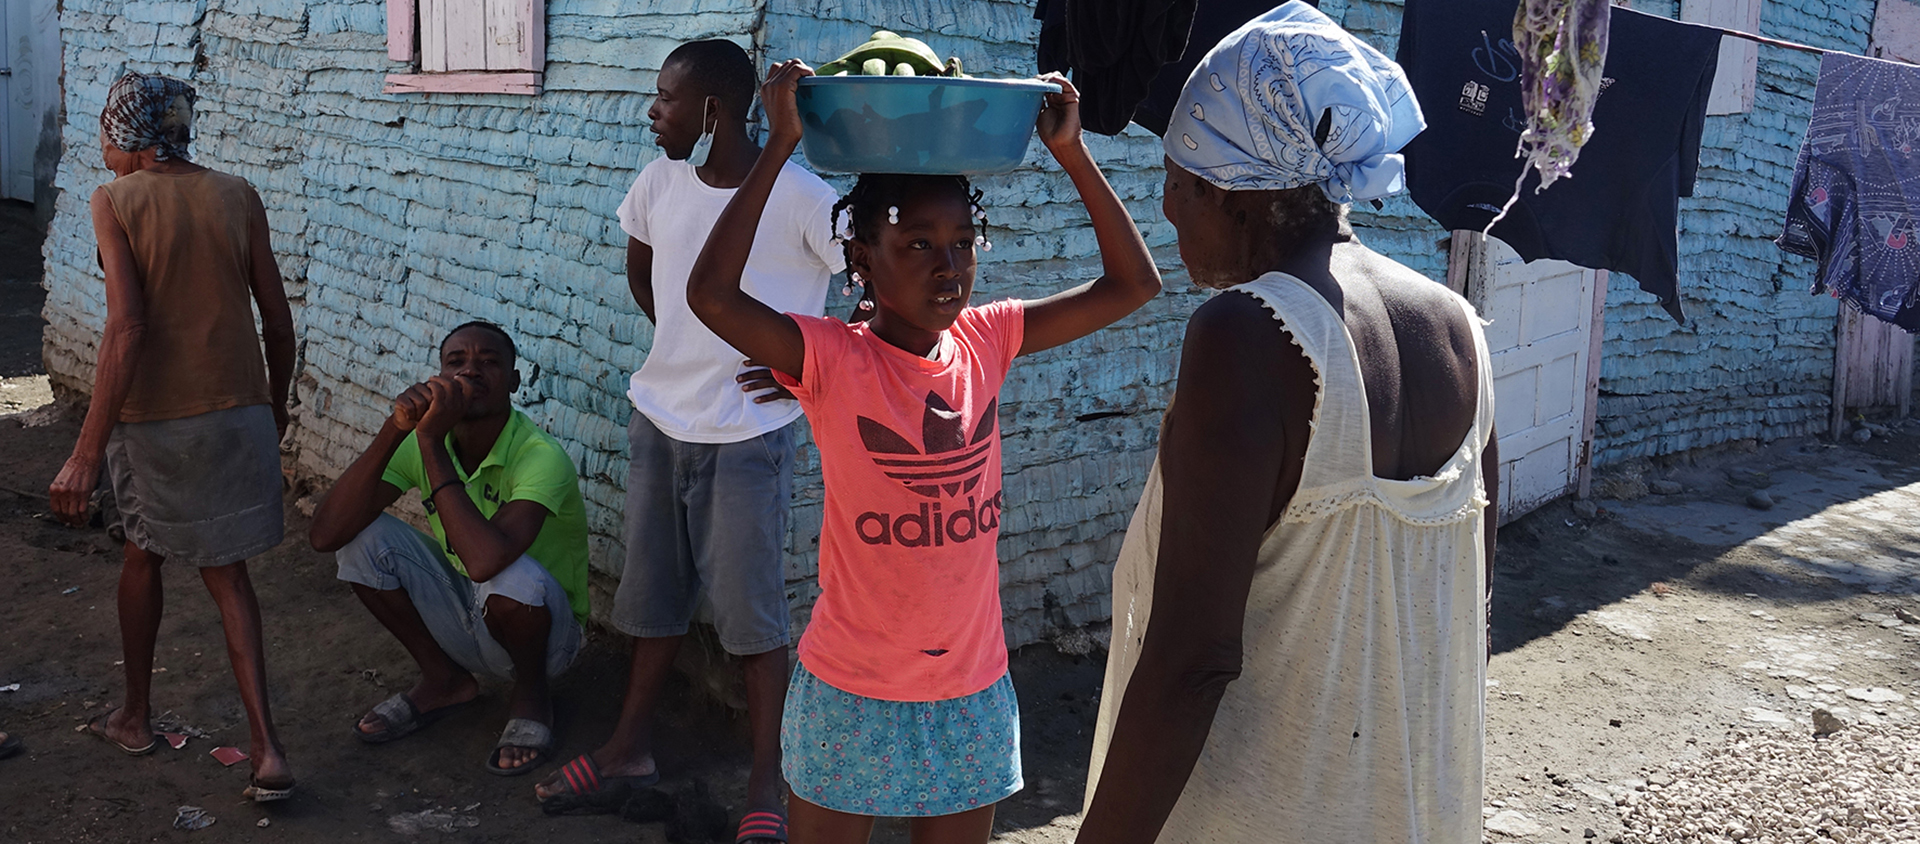 En République dominicaine, les associations demandent que les solutions aux problèmes migratoires adoptées par l’État respectent les droits humains, en particulier pour les migrants haïtiens et leurs descendants | © Jean-Claude Gerez